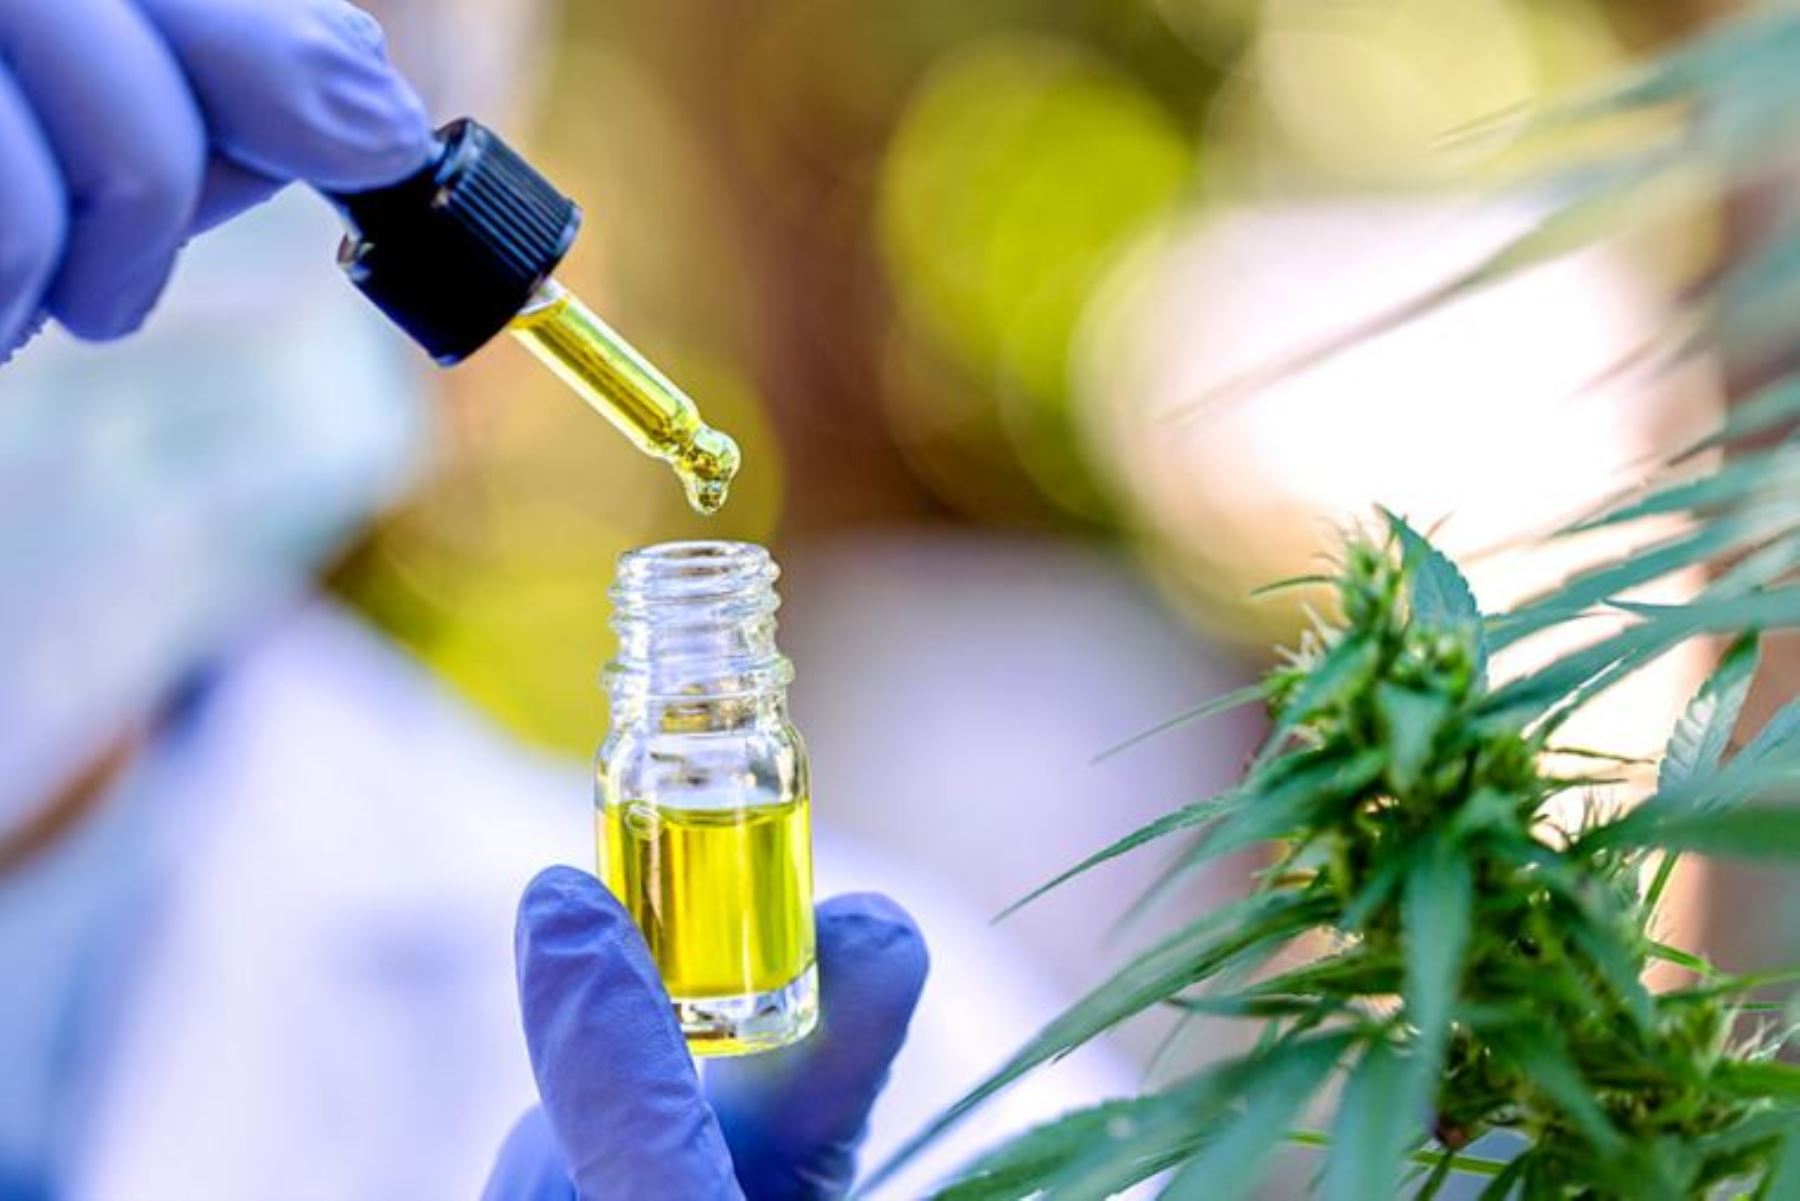 Cannabis medicinal de alta calidad: Jujuy construirá un parque de producción con proyección internacional 